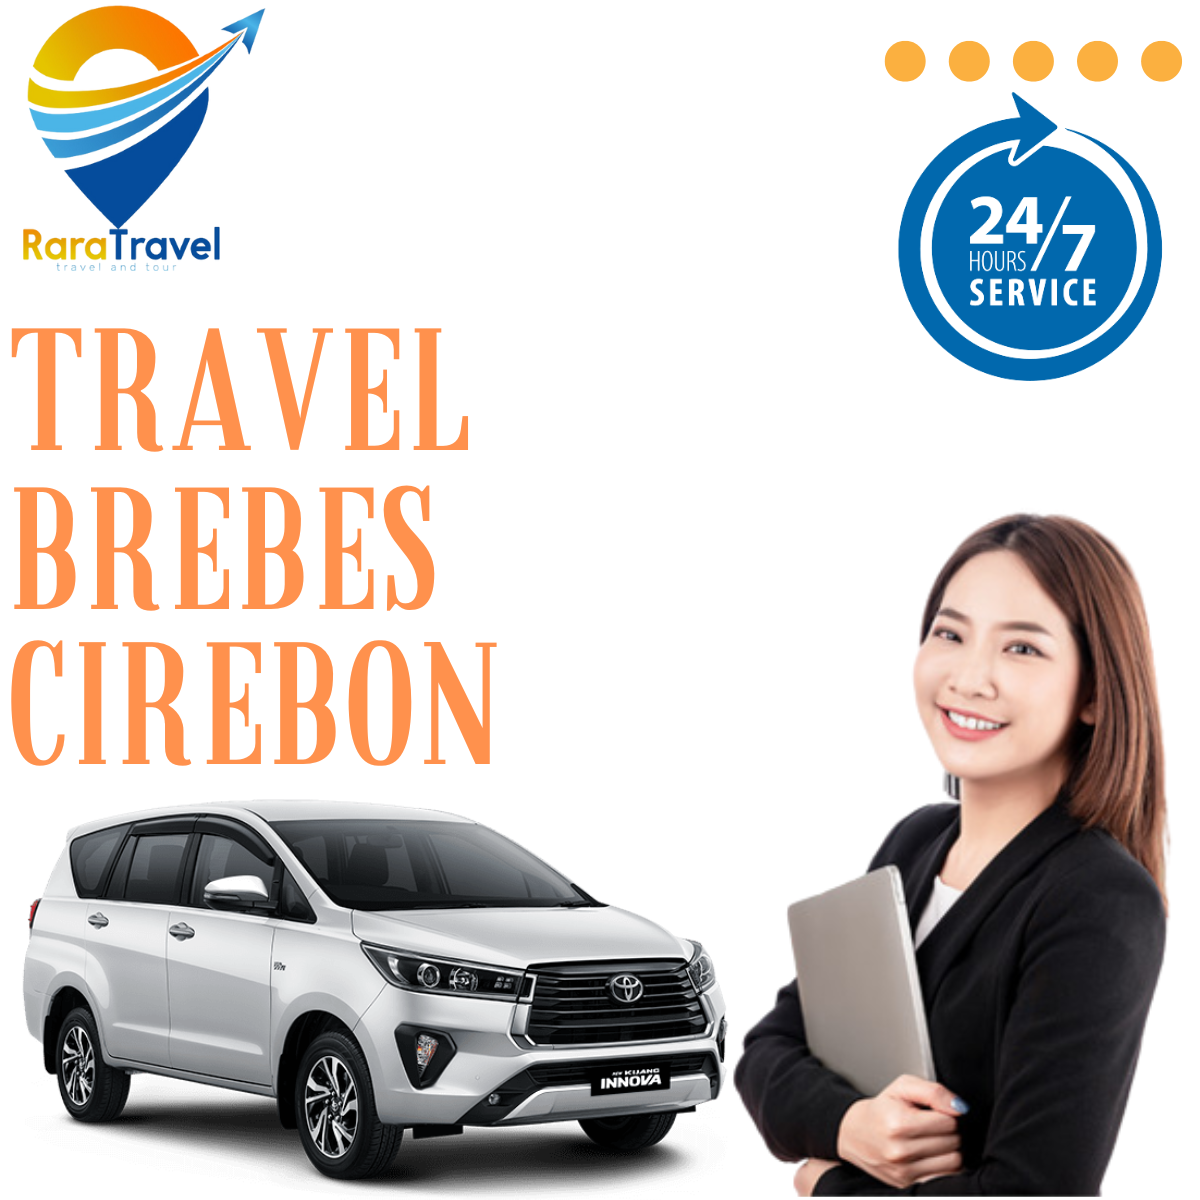 Travel Brebes Cirebon